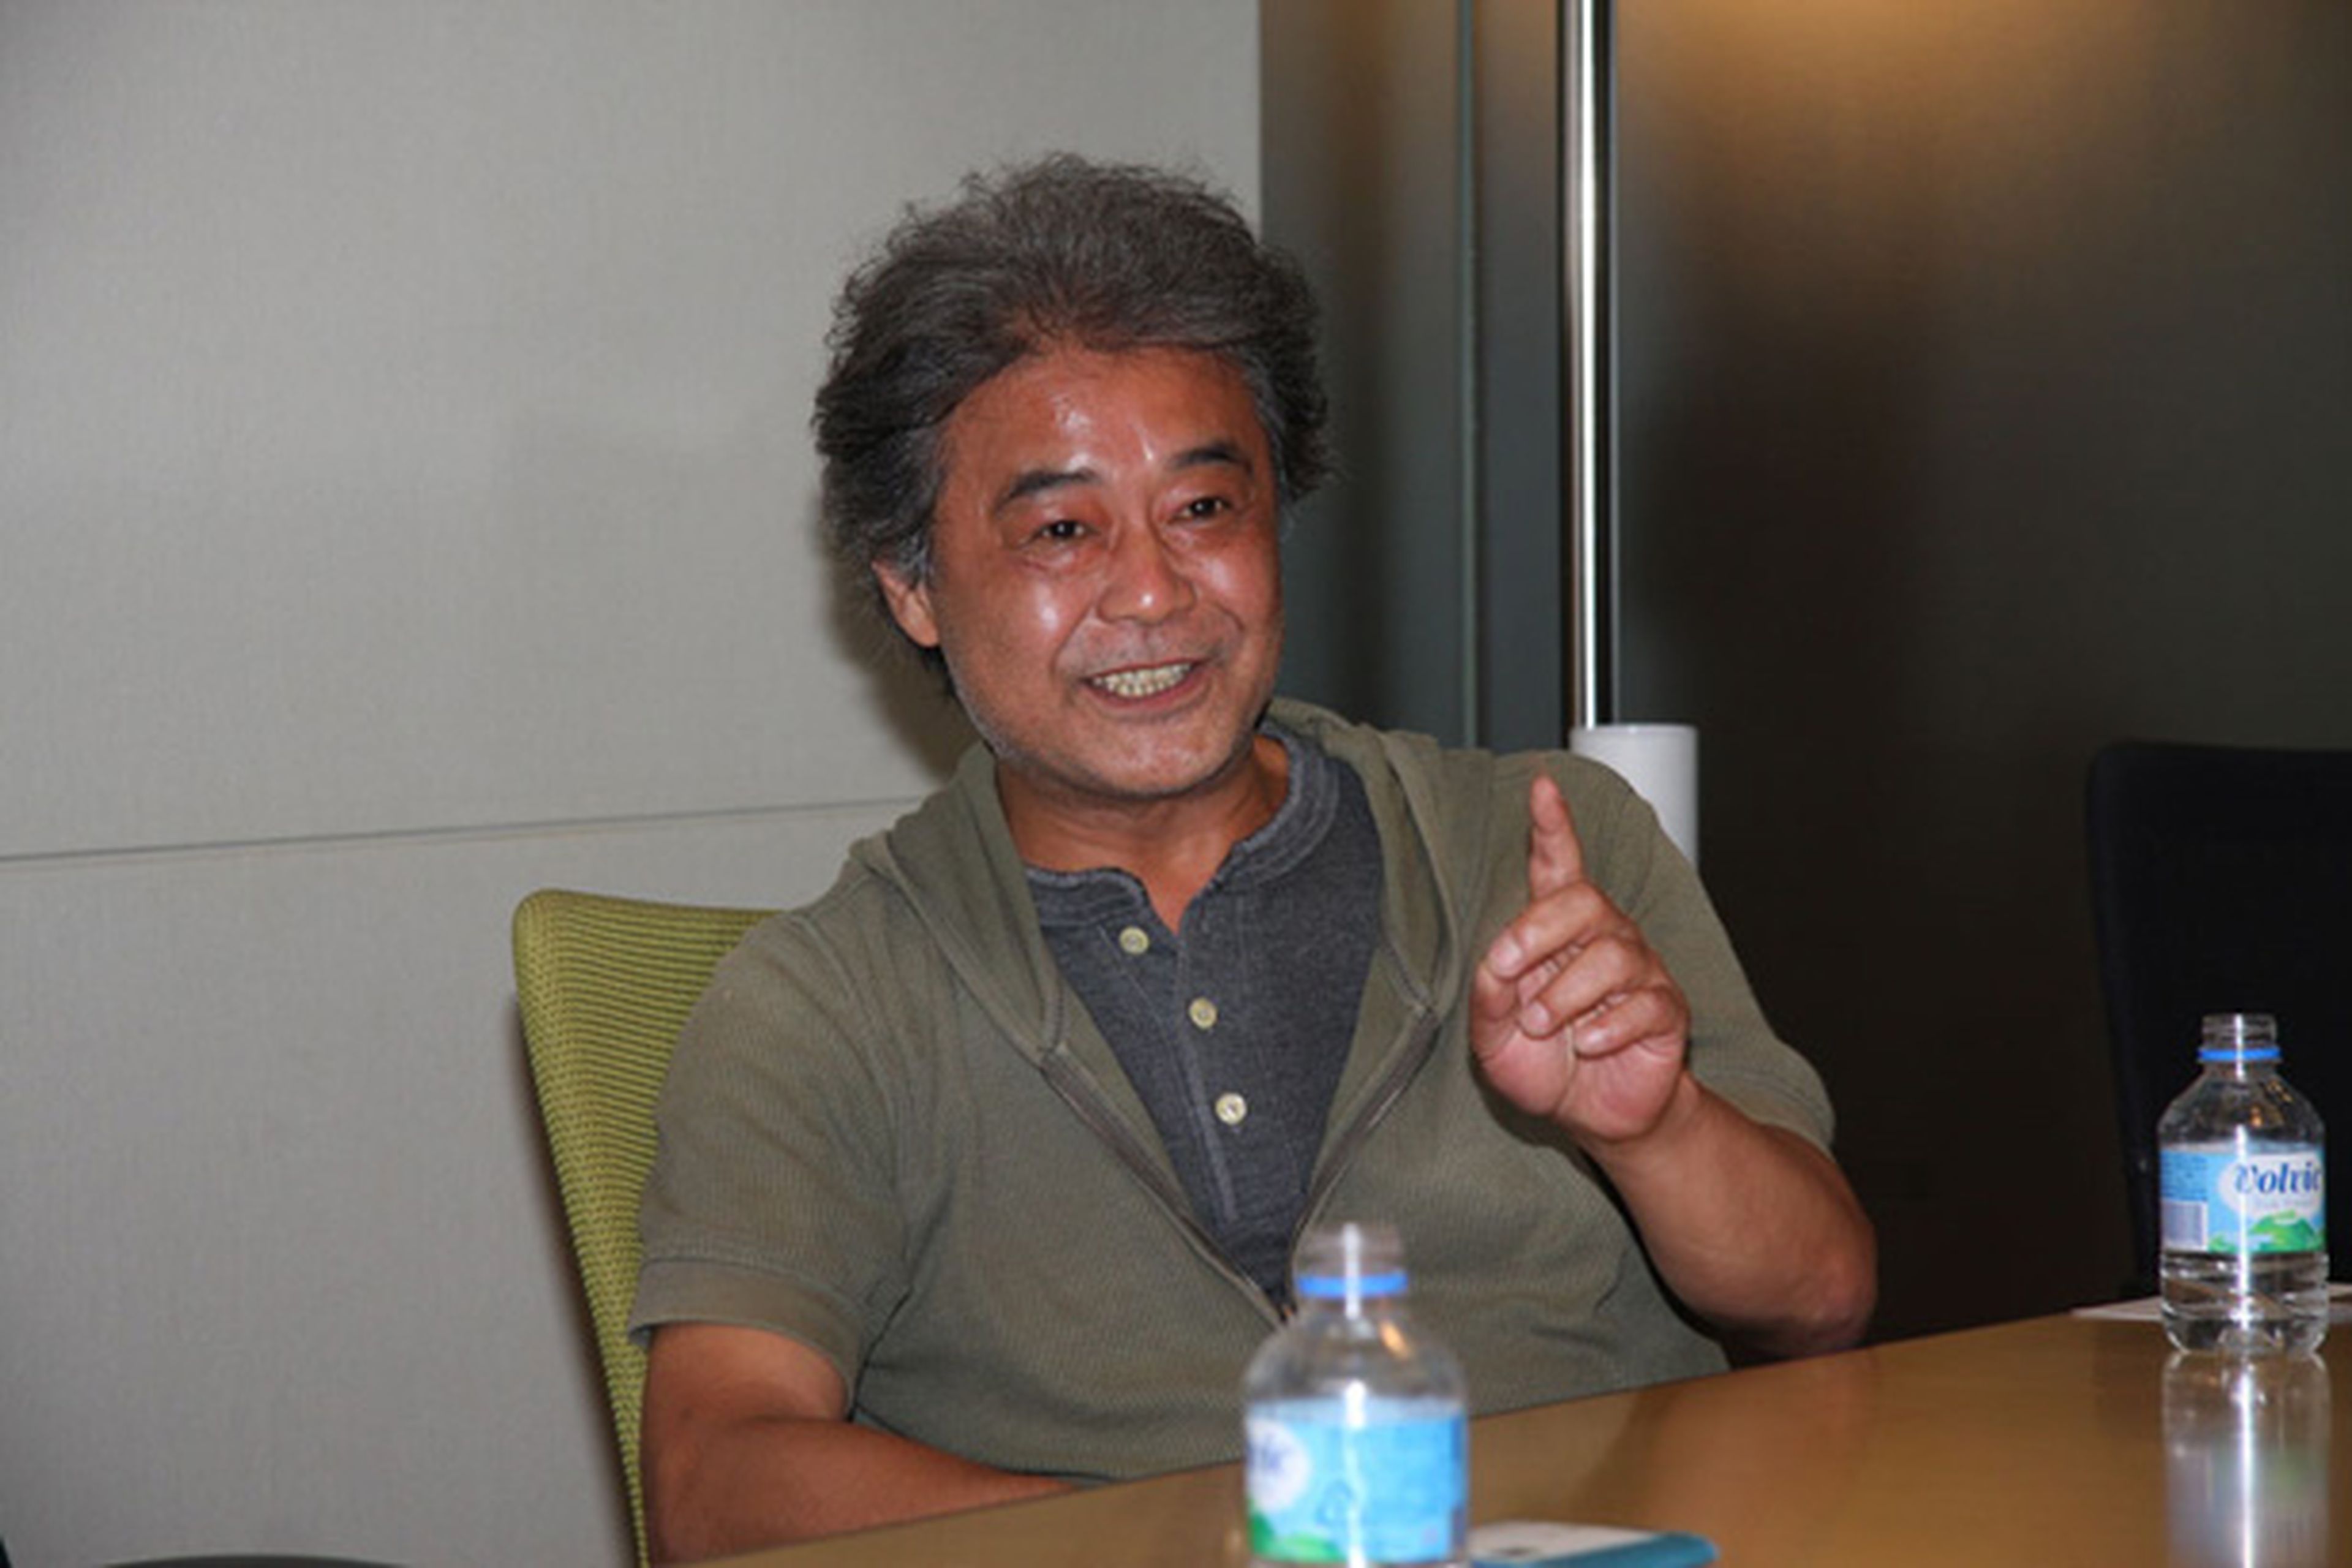 El director de Dragon Ball Z irá al Salón del Manga